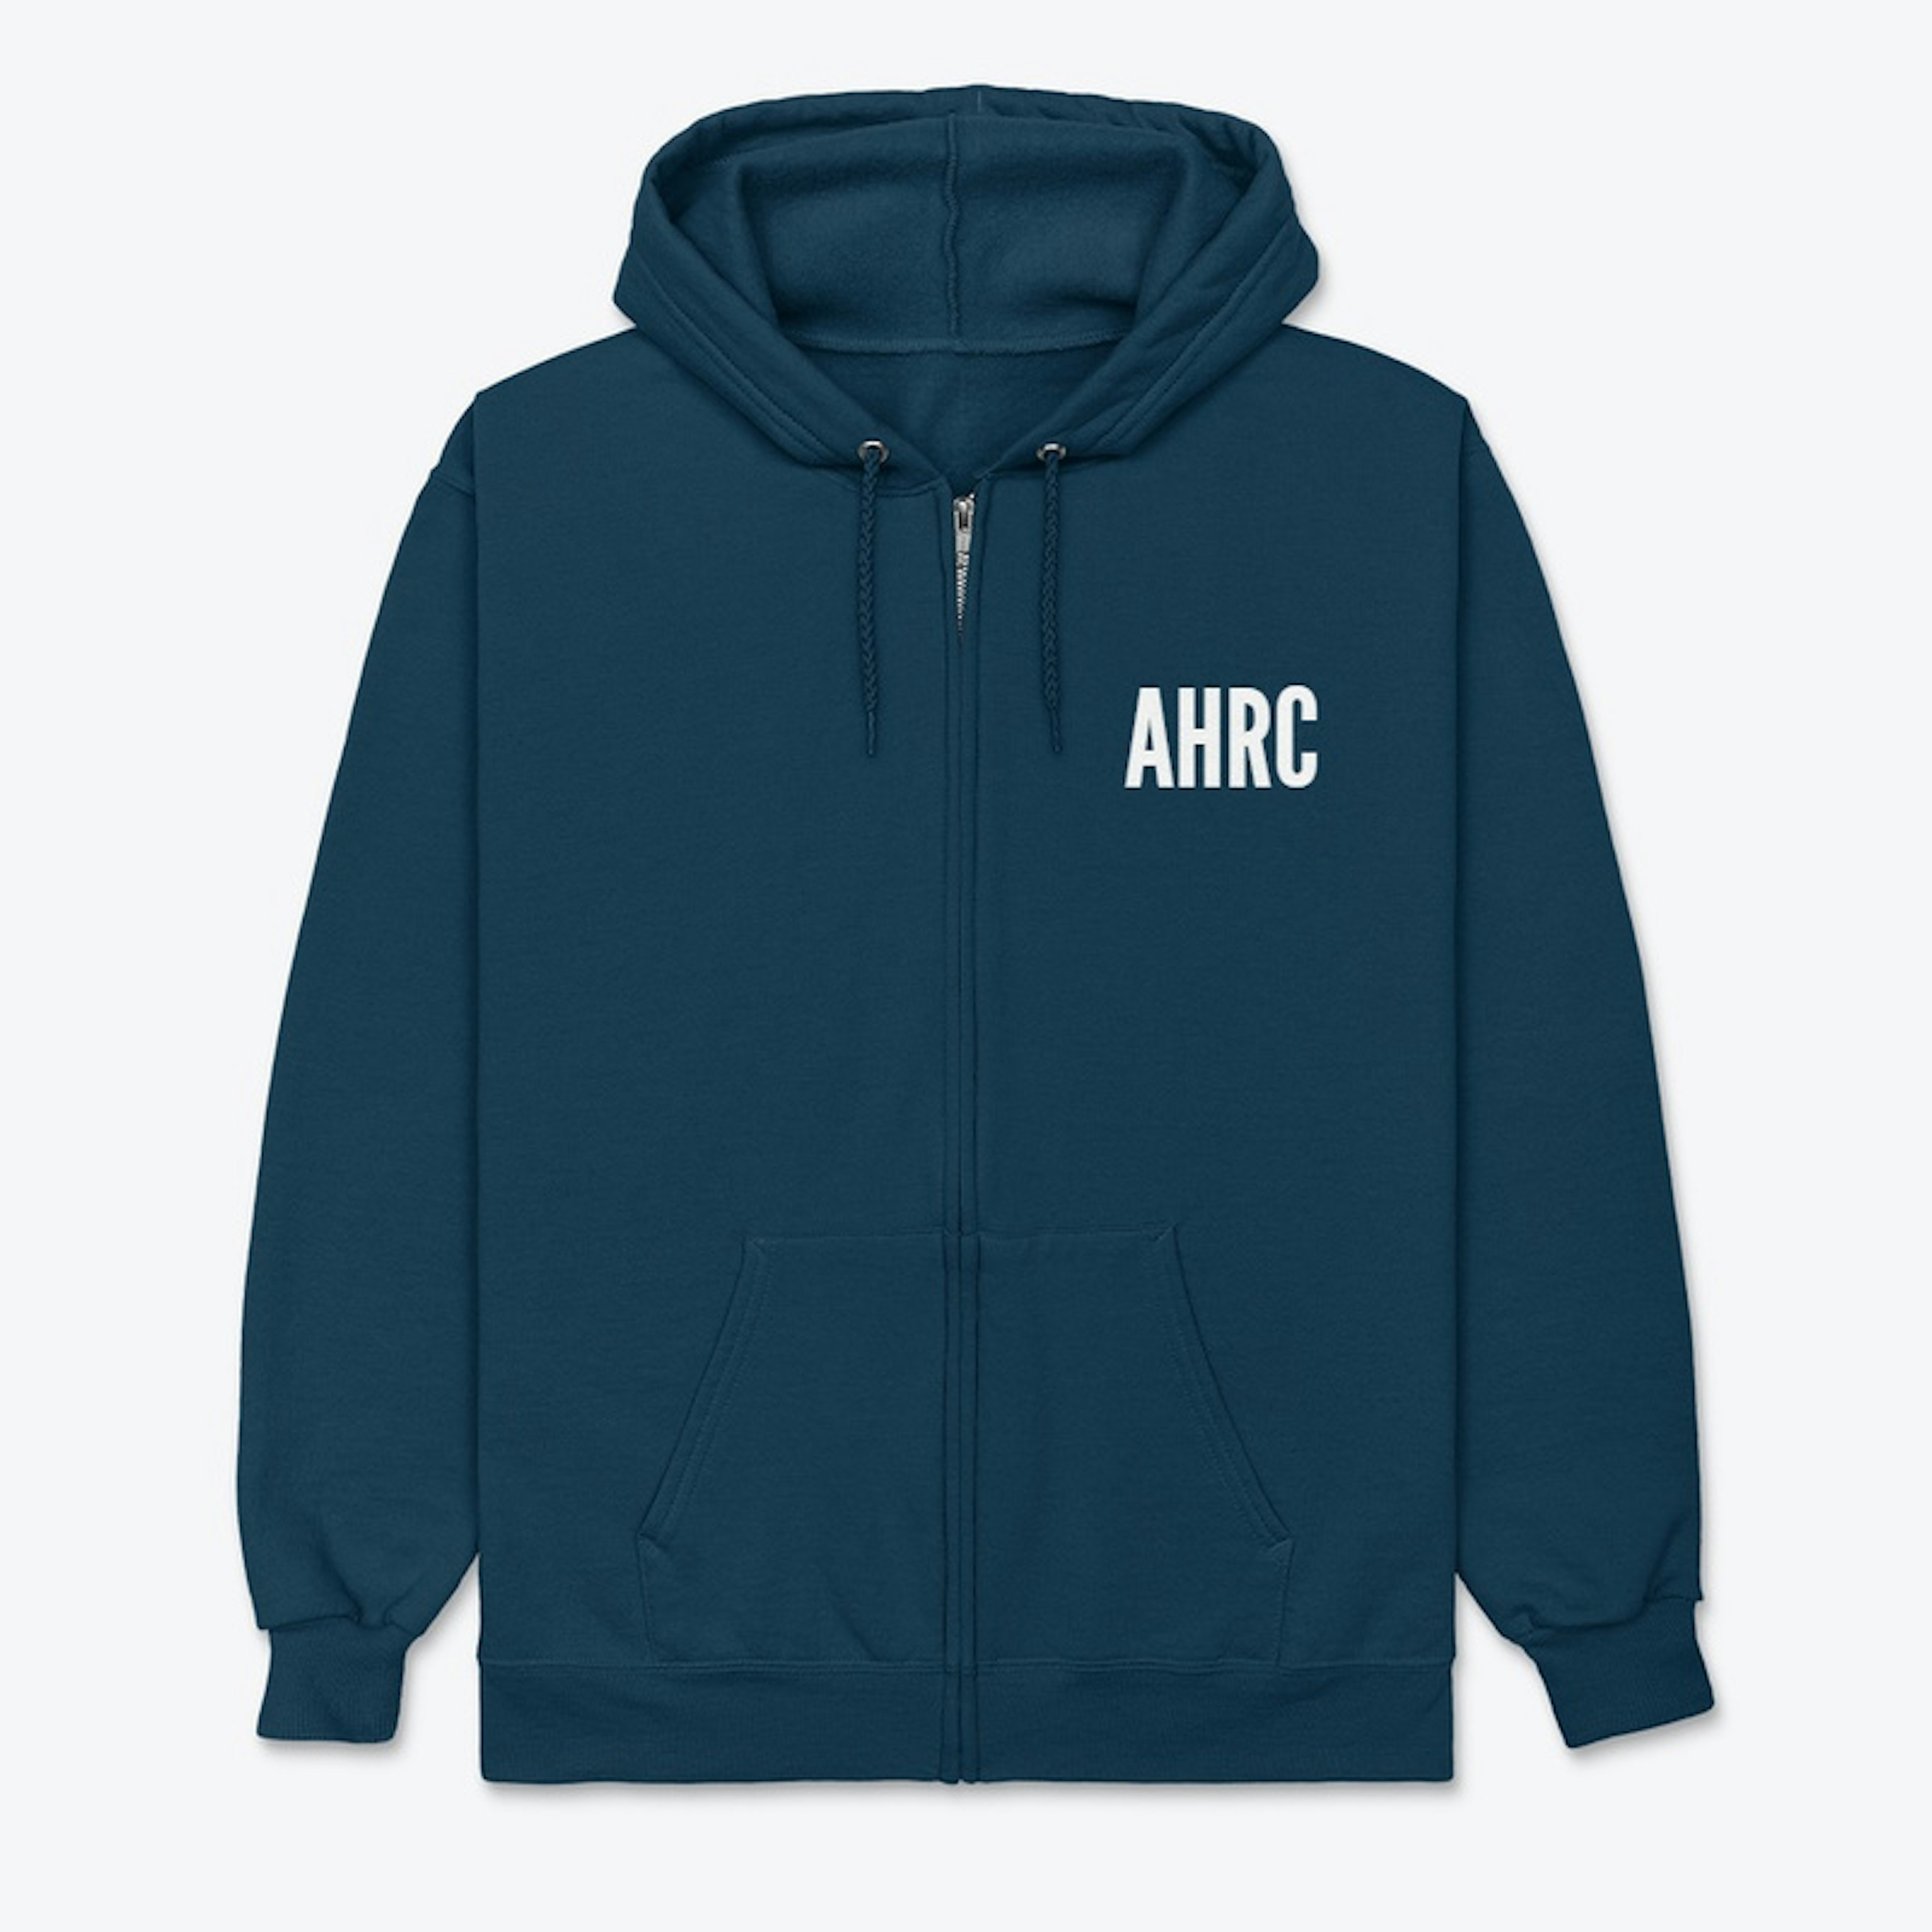 AHRC Zip Up Sweatshirt